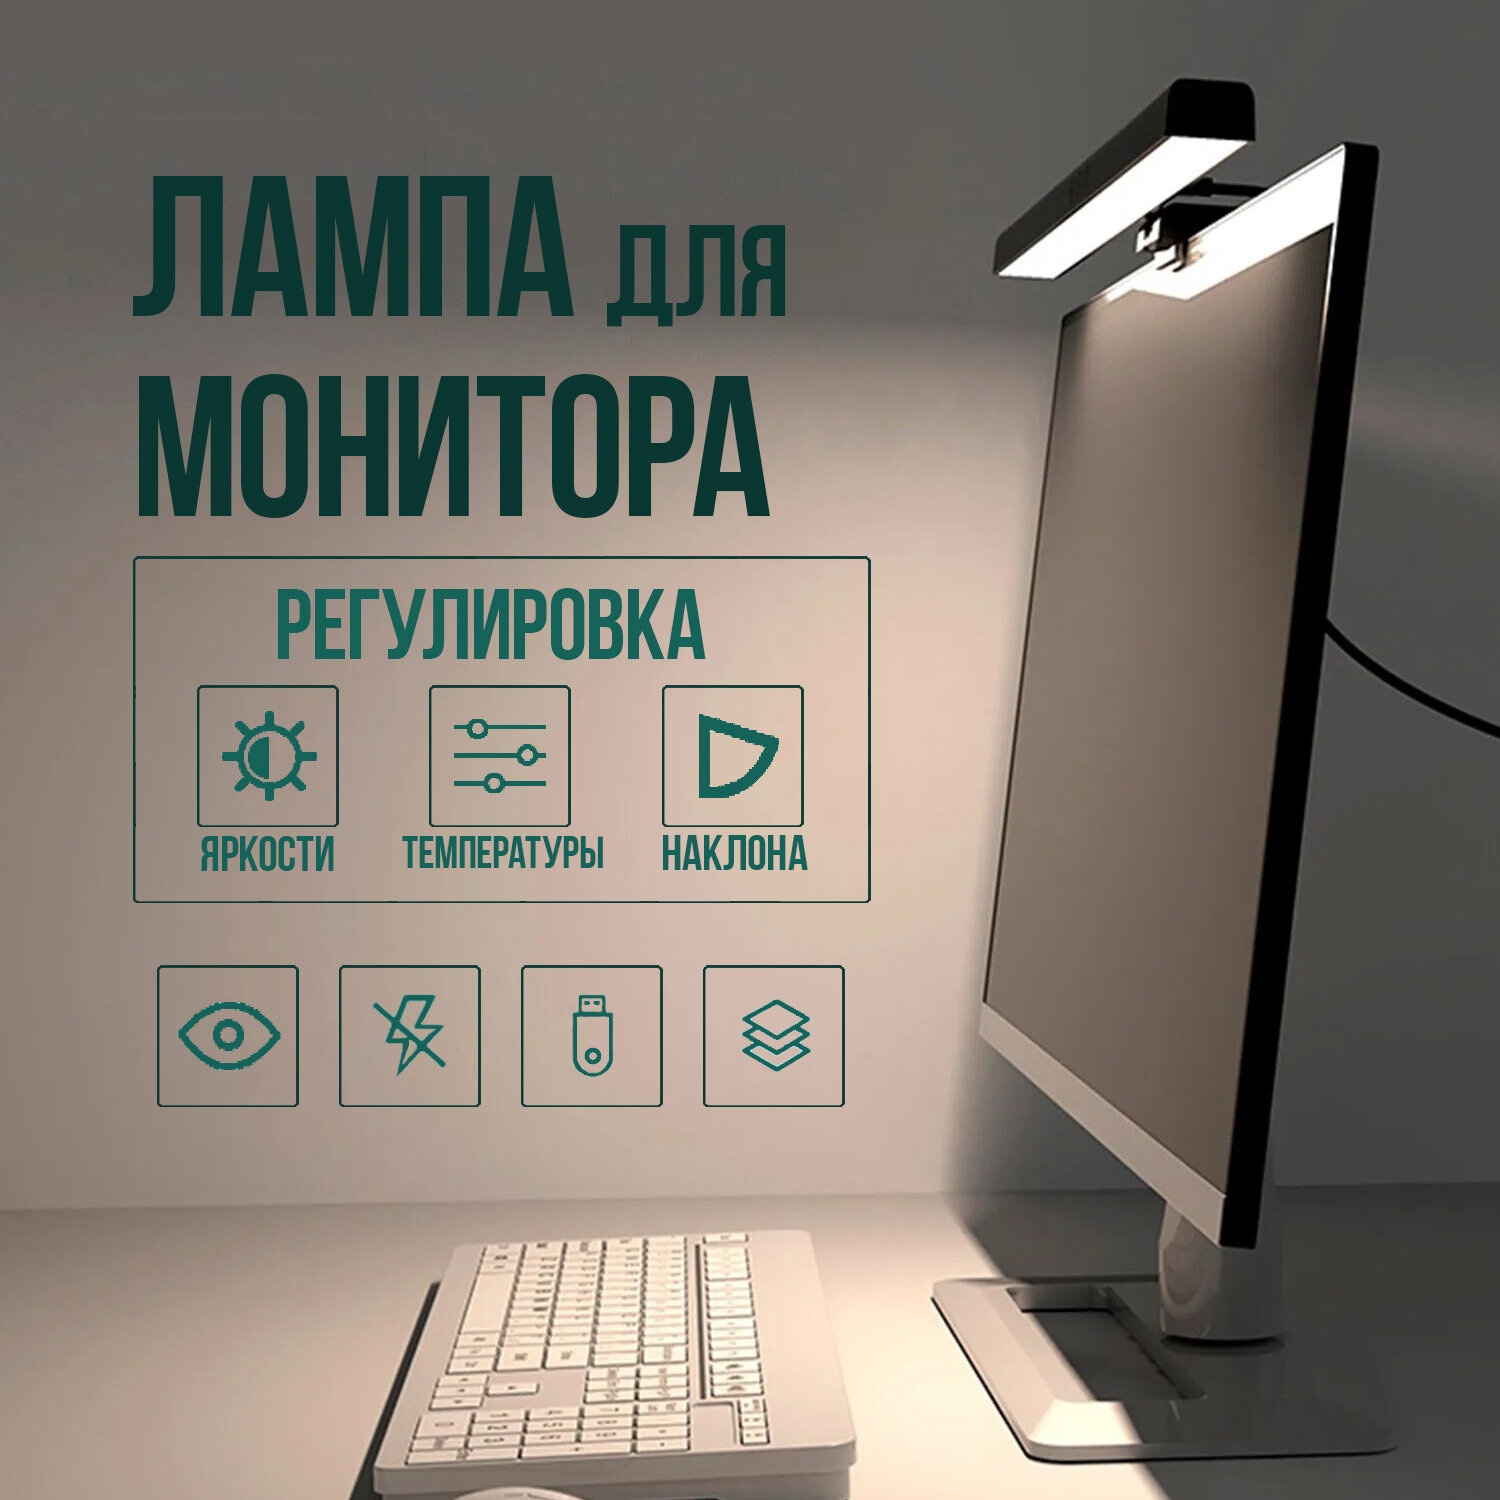 Лампа для монитора / Настольный светильник / Скринбар / Подсветка для компьютера / Светильник с креплением на монитор